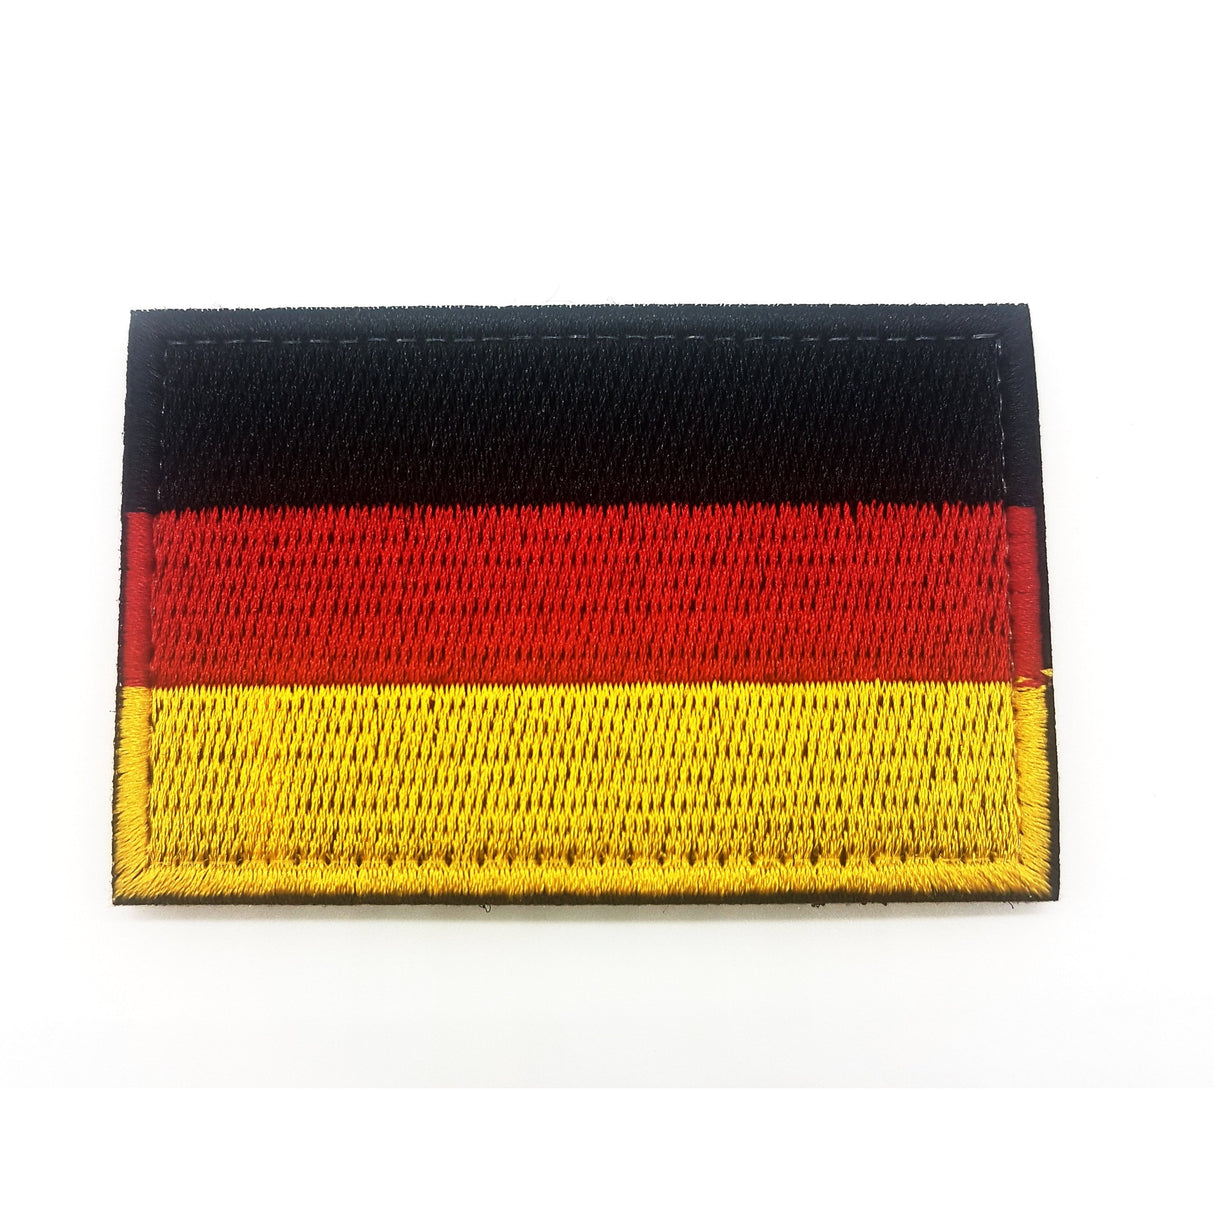 Deutschland Flagge Textil Patch - Polizeimemesshop